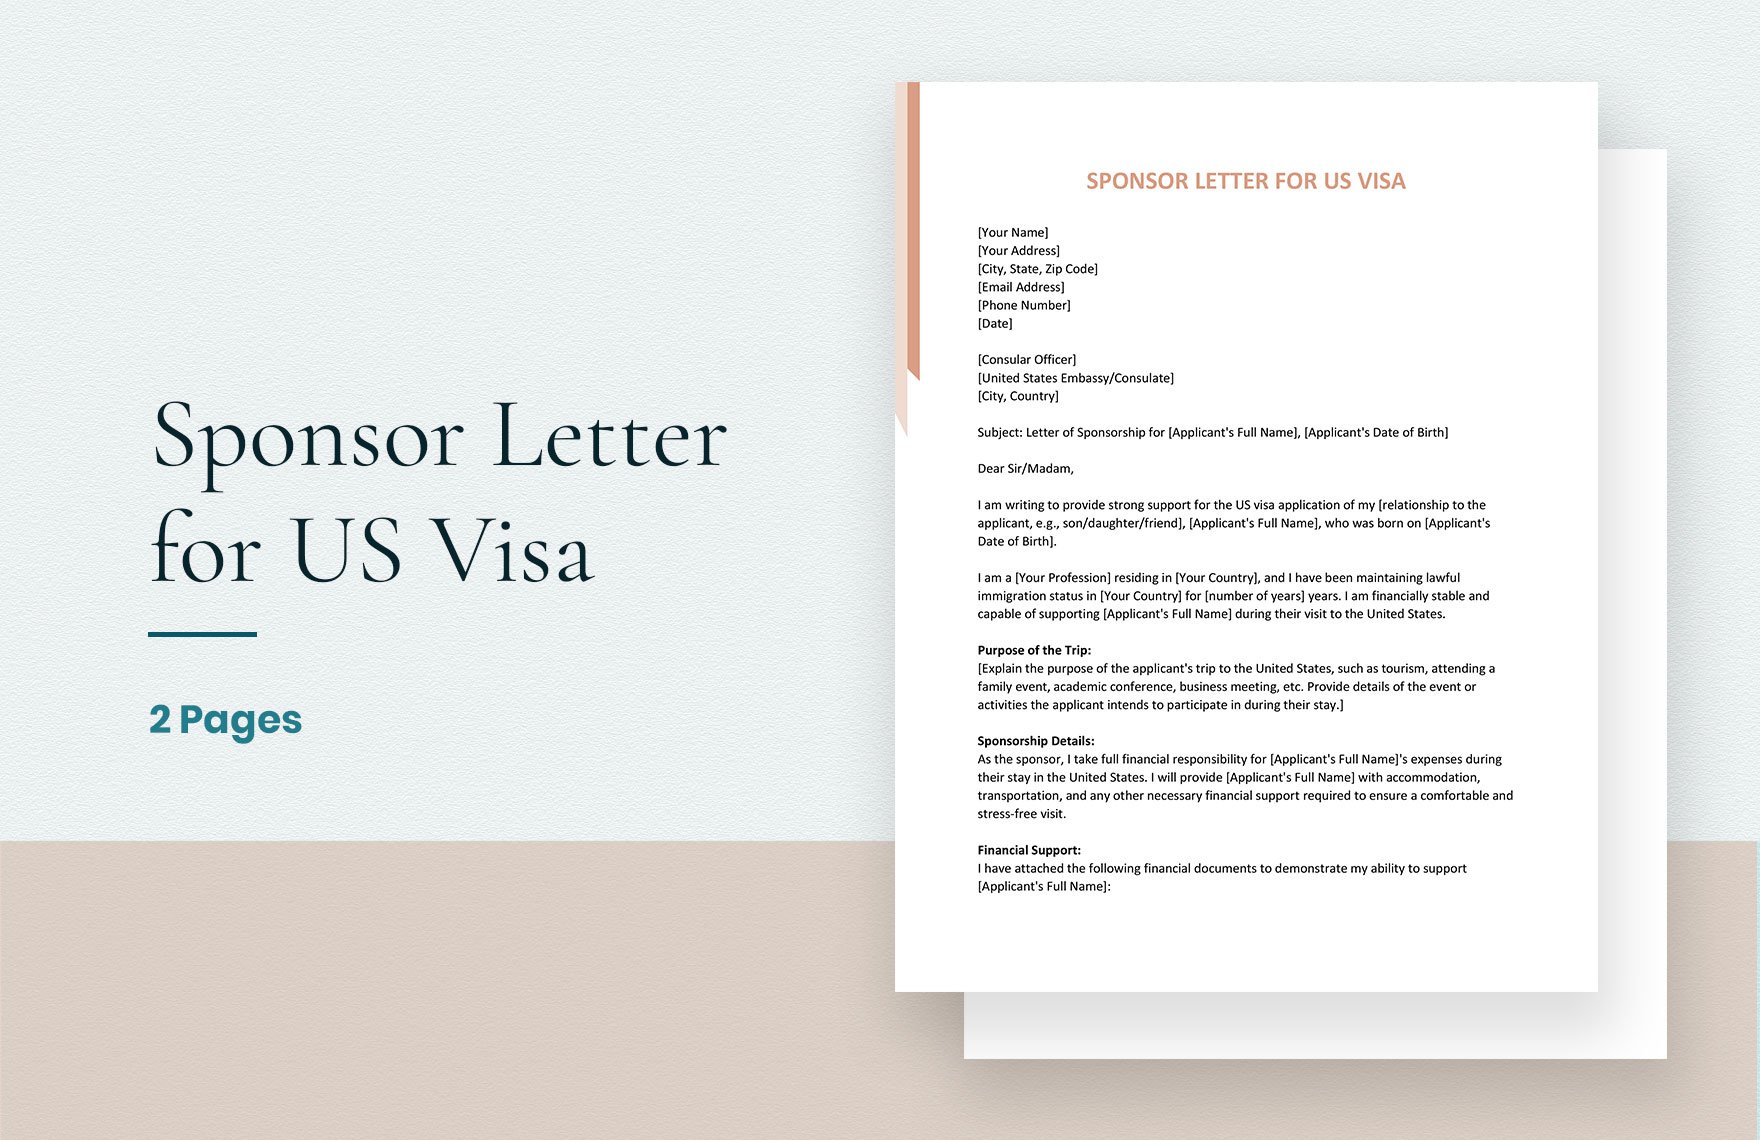 Sponsor Letter for US Visa